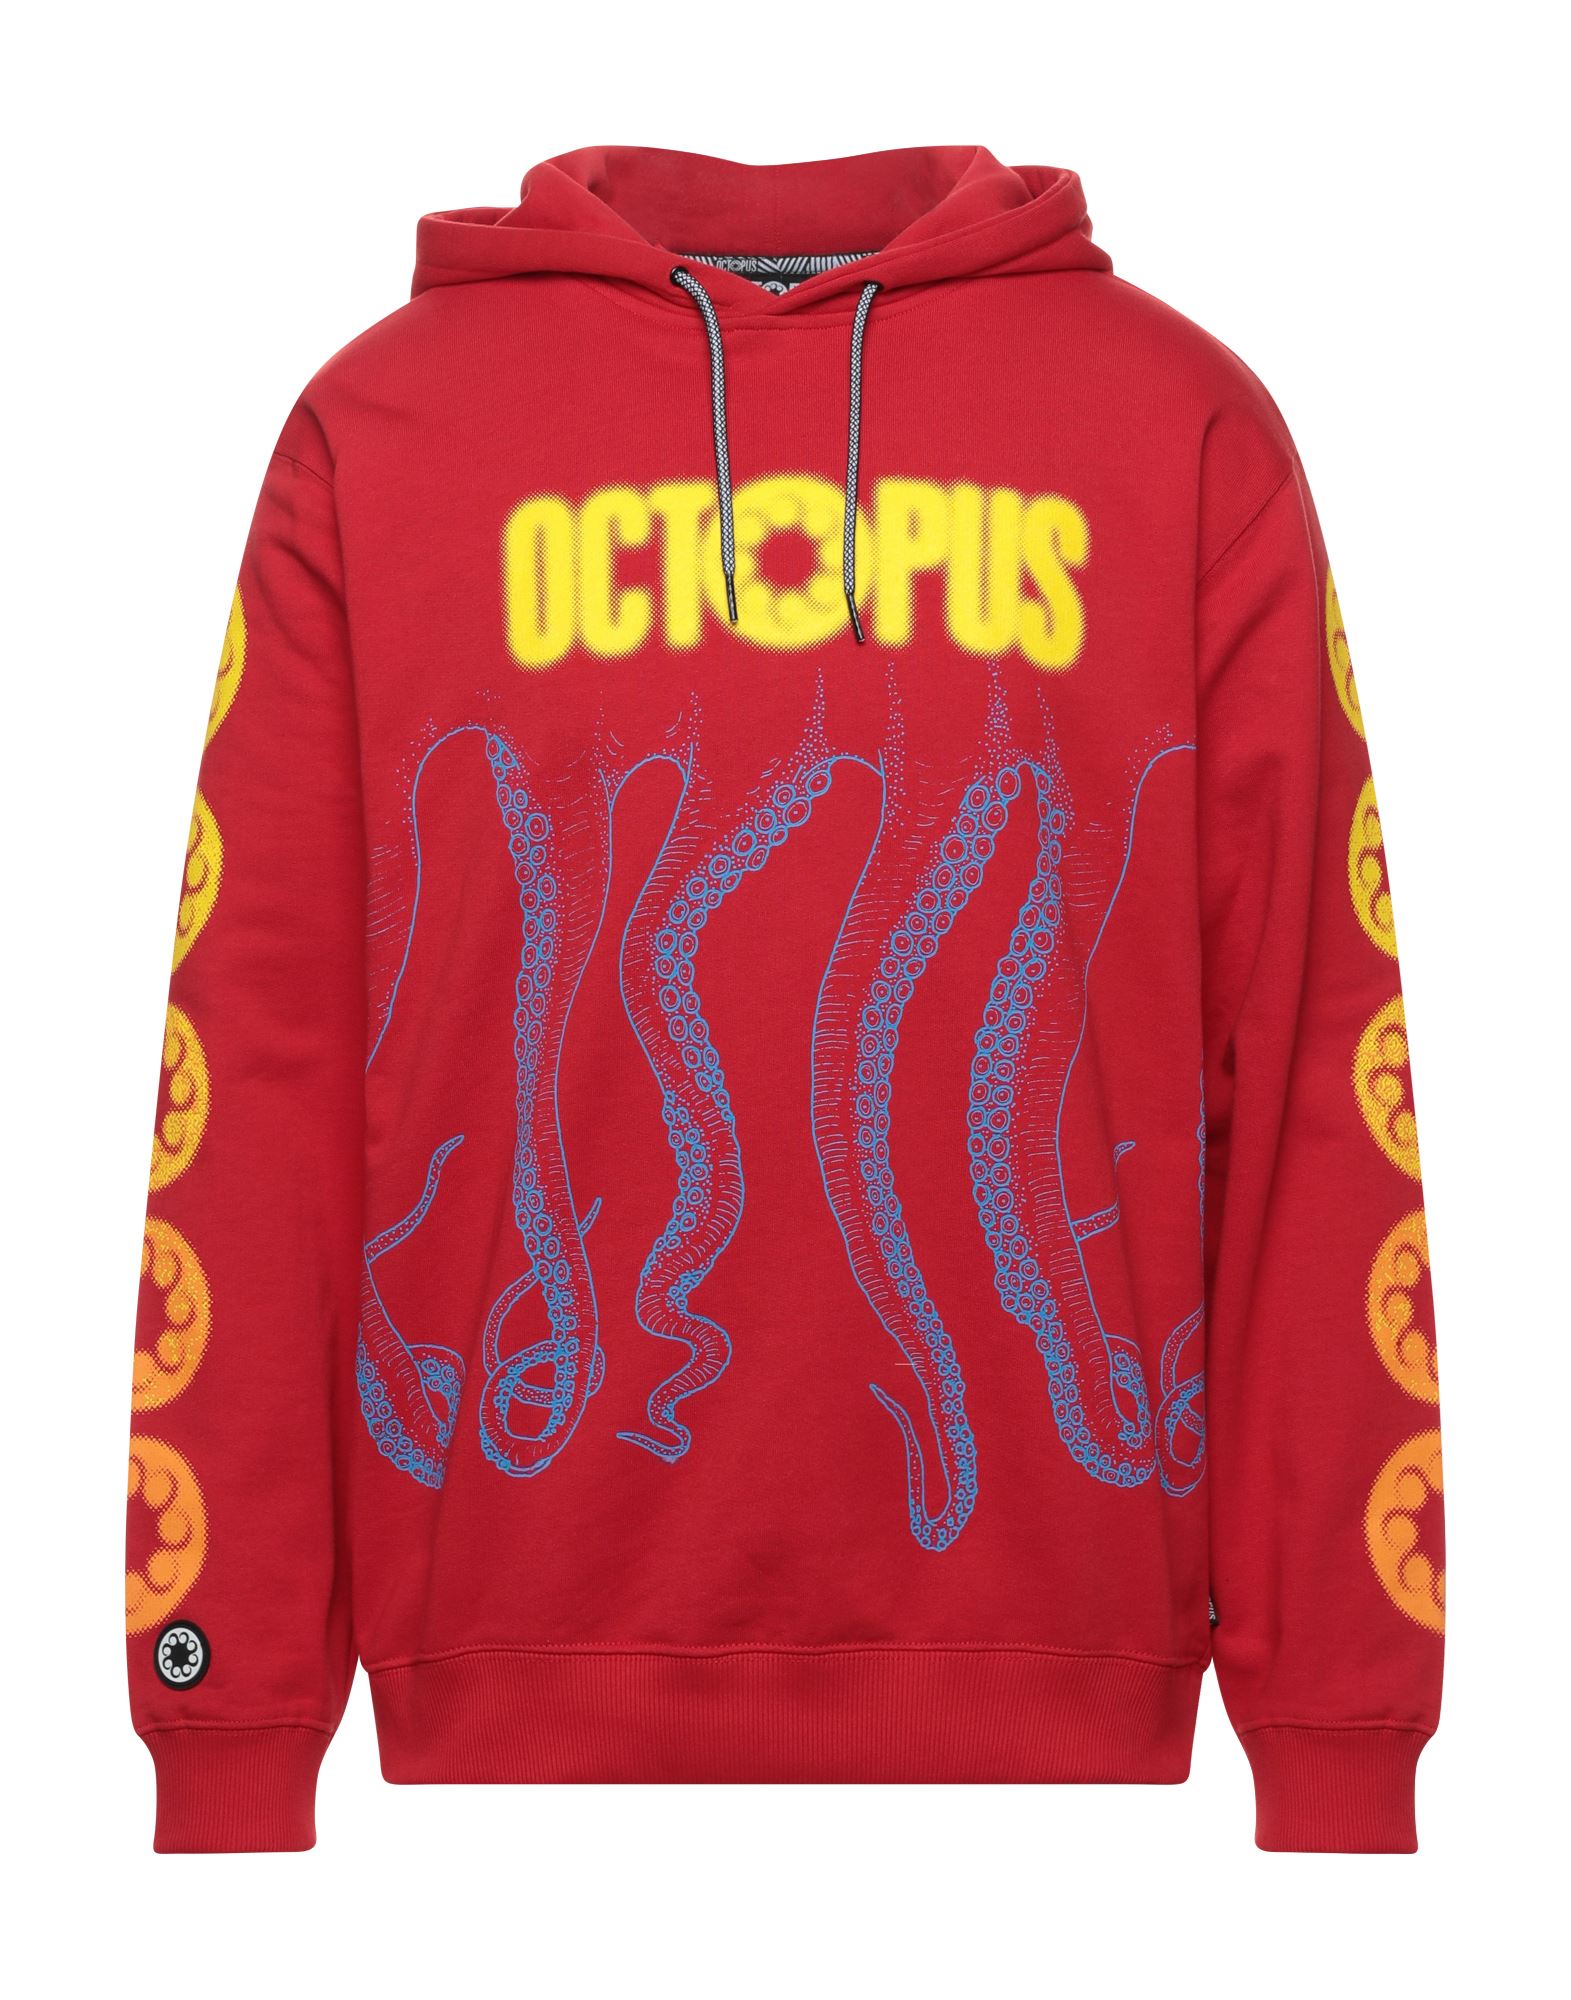 OCTOPUS Sweatshirt Herren Rot von OCTOPUS